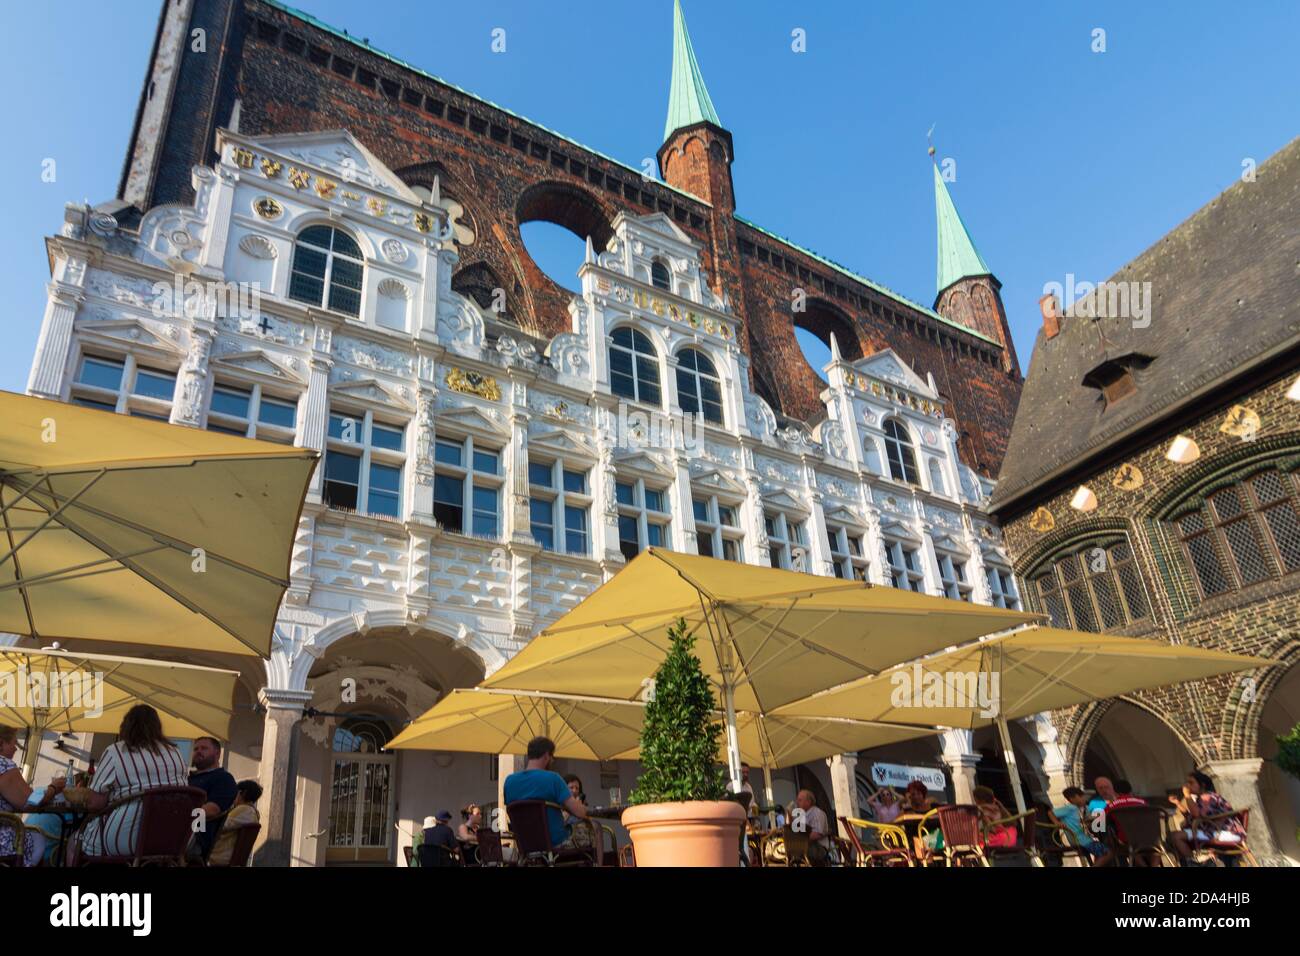 Lübeck: Hôtel de ville, Ostsee (Mer Baltique), Schleswig-Holstein, Allemagne Banque D'Images